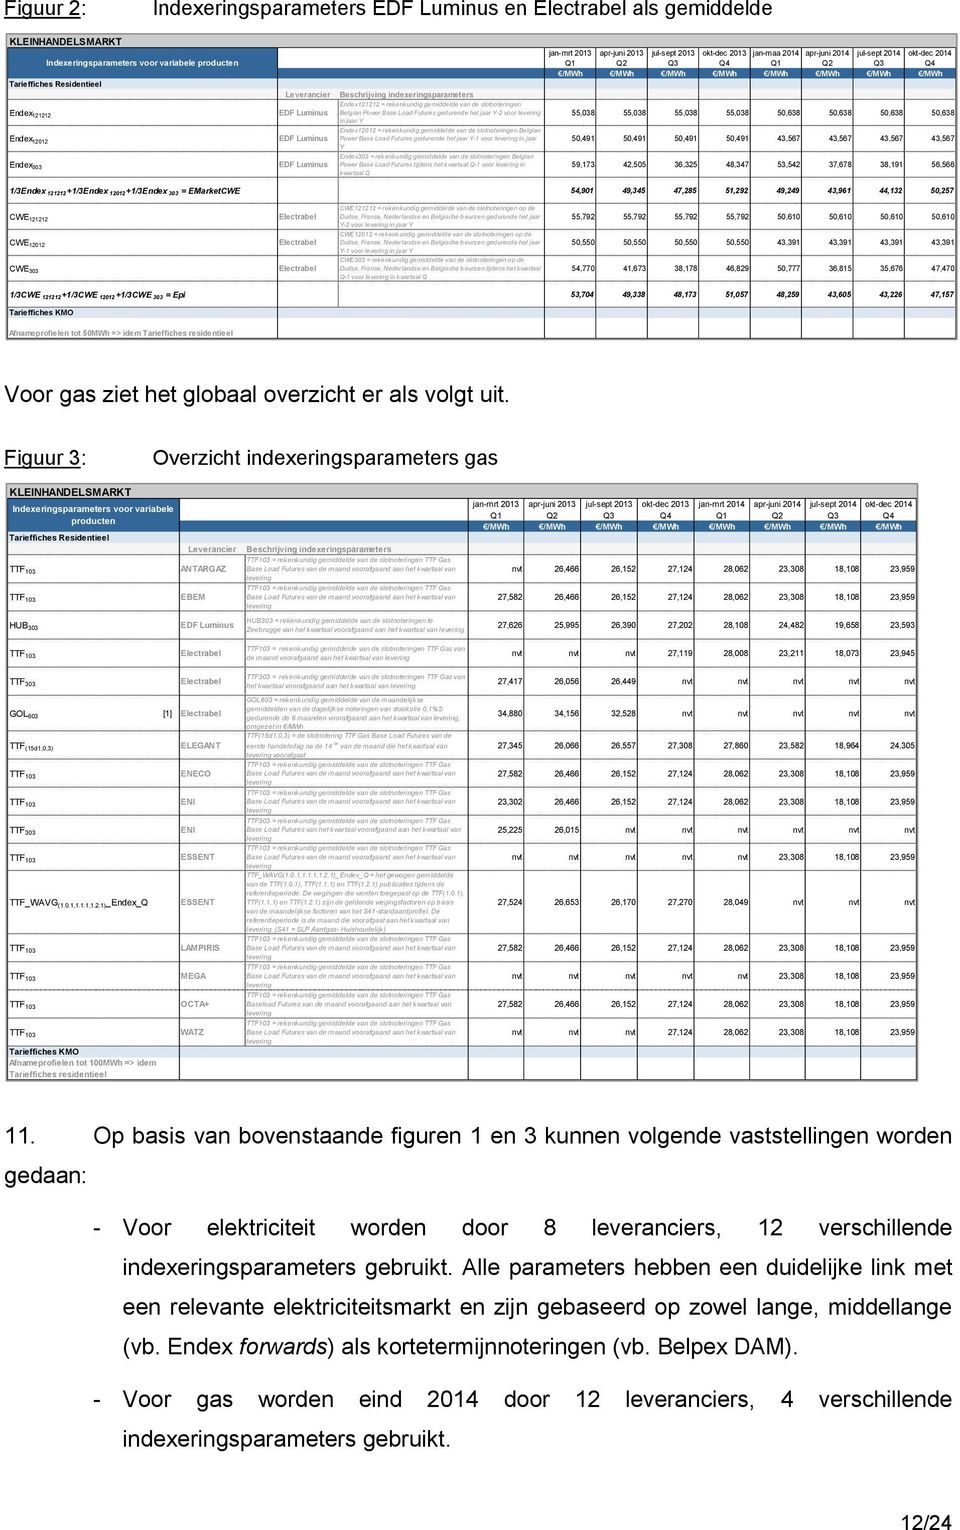 /MWh /MWh /MWh /MWh Beschrijving indexeringsparameters Endex121212 = rekenkundig gemiddelde van de slotnoteringen Belgian Power Base Load Futures gedurende het jaar Y-2 voor levering 55,038 55,038